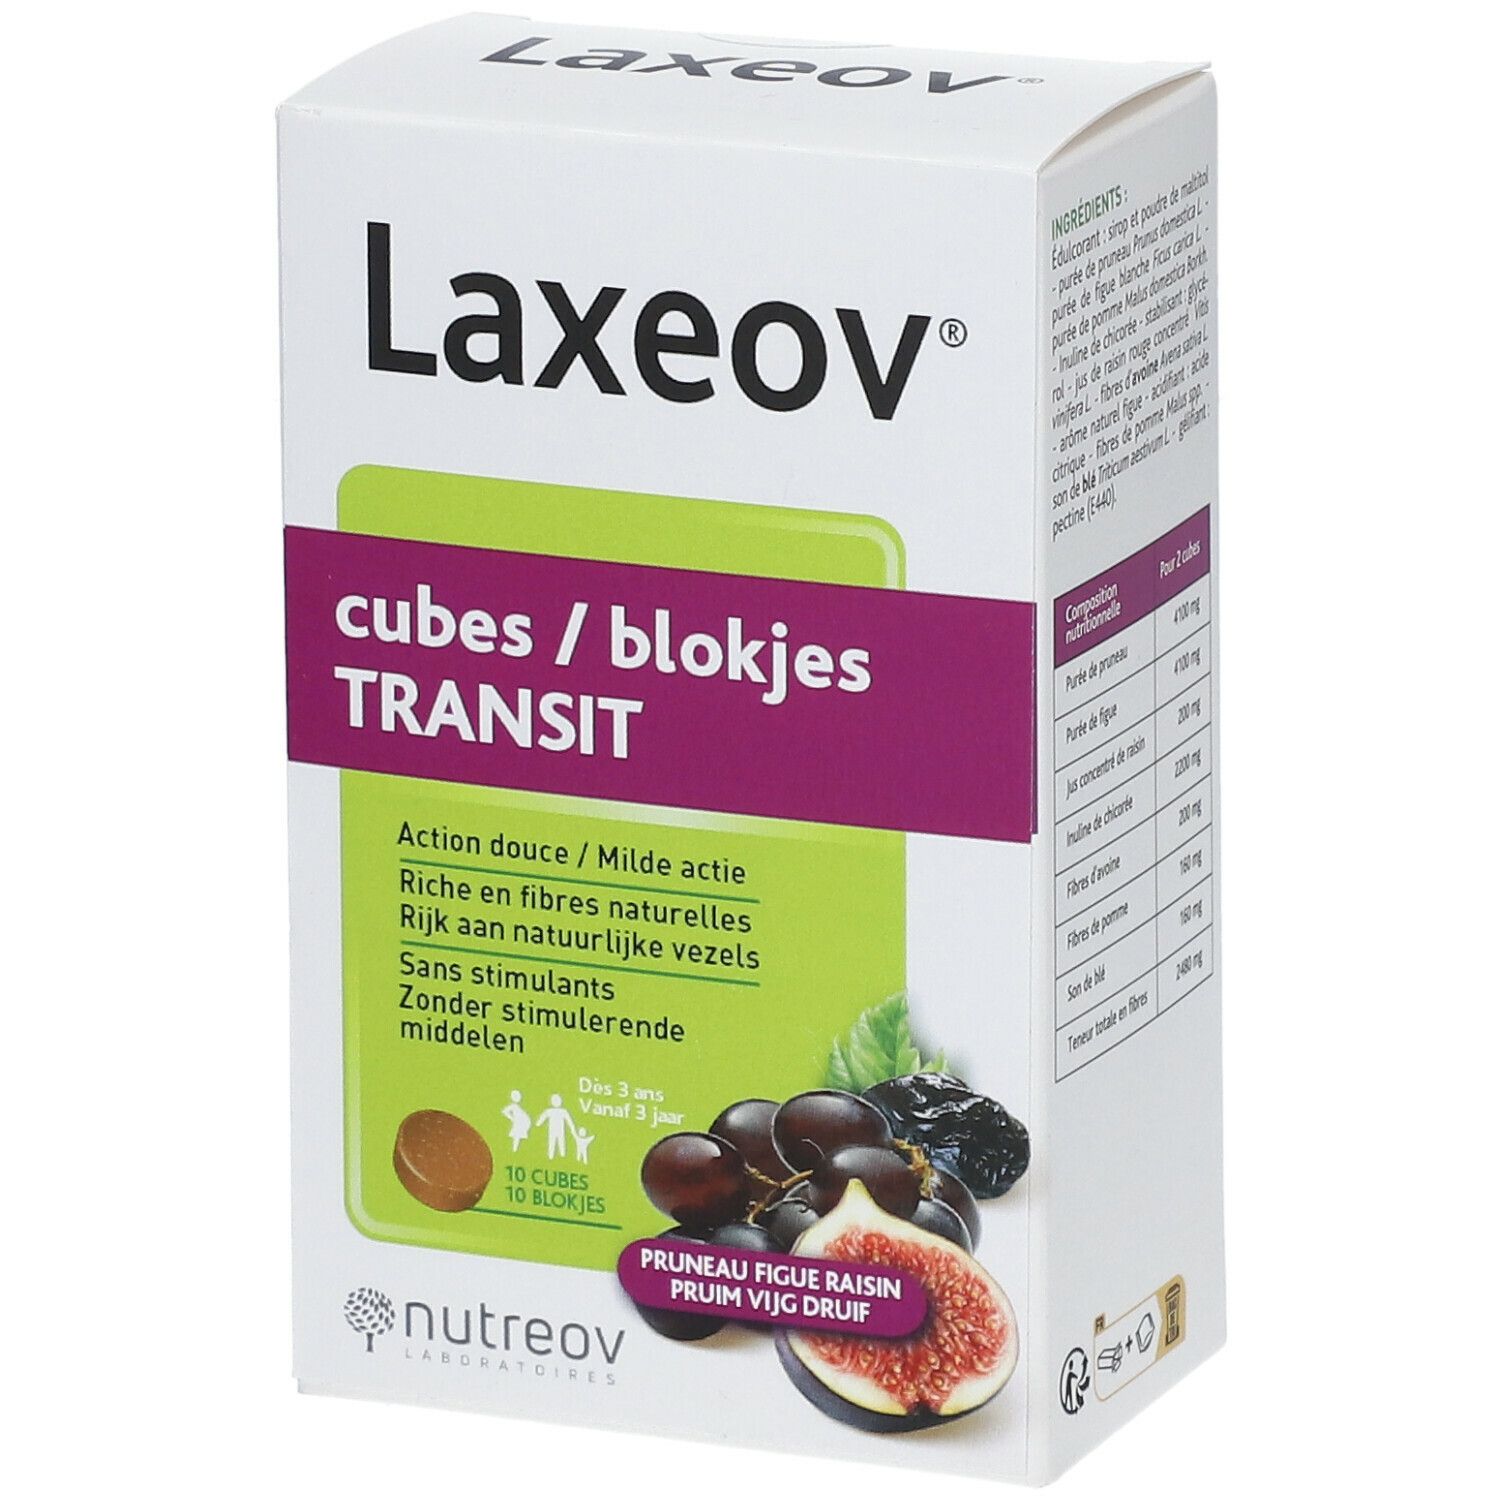 LAXEOV® Würfel Transit express® Pflaume Feigen Traubenfeige